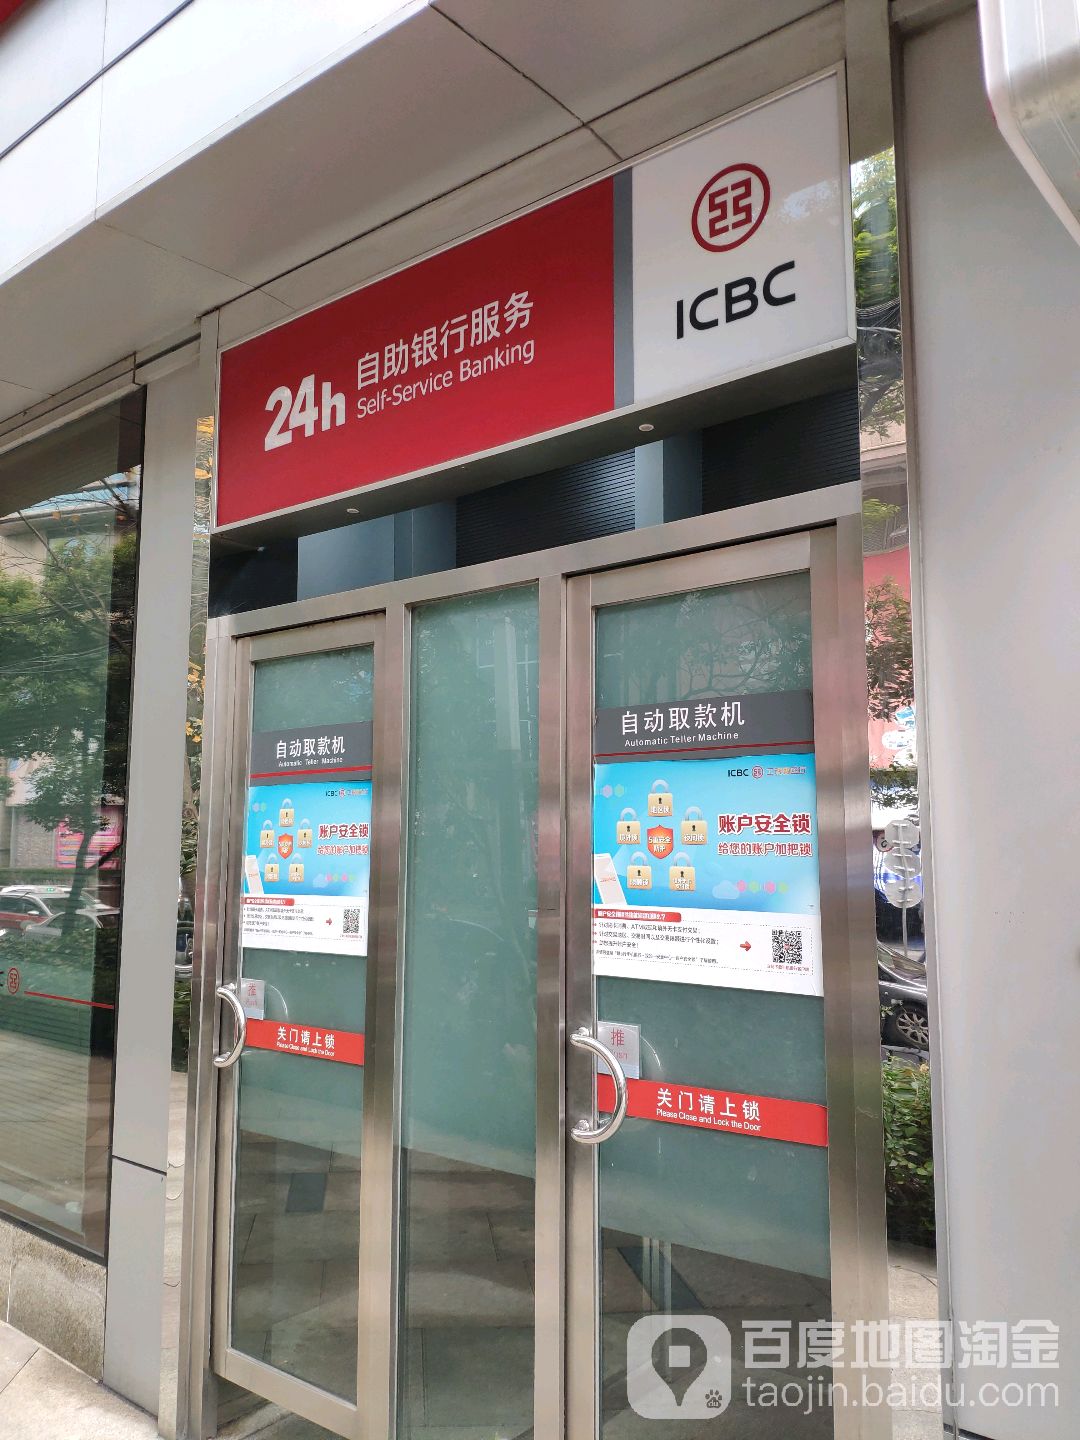 中国工商银行24小时自助银行(西藏中路支行)